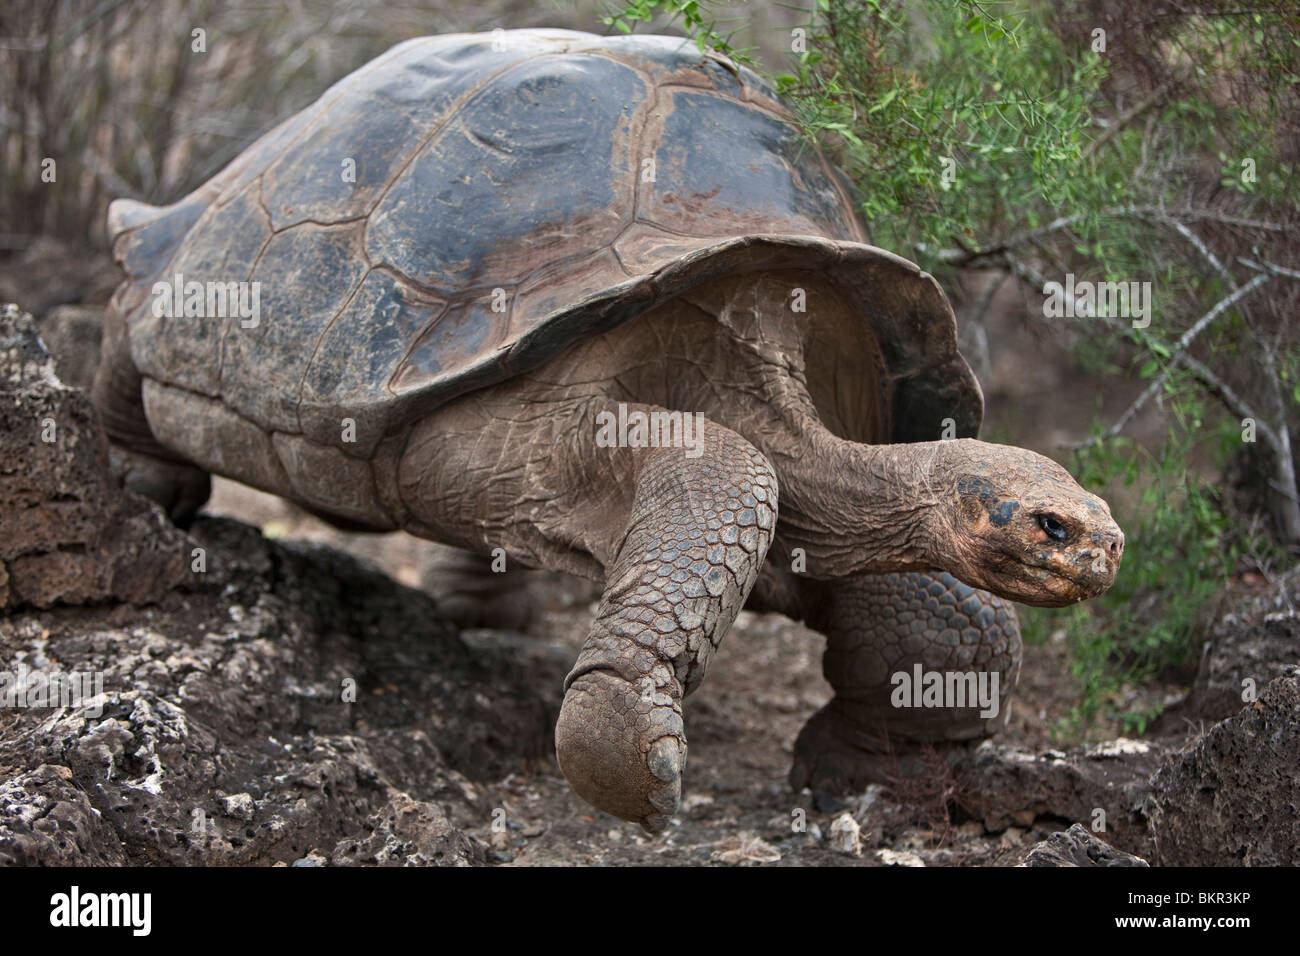 Galapagos-Inseln, gewölbte eine riesige Schildkröte nach dem die Galapagos-Inseln benannt wurden. Stockfoto